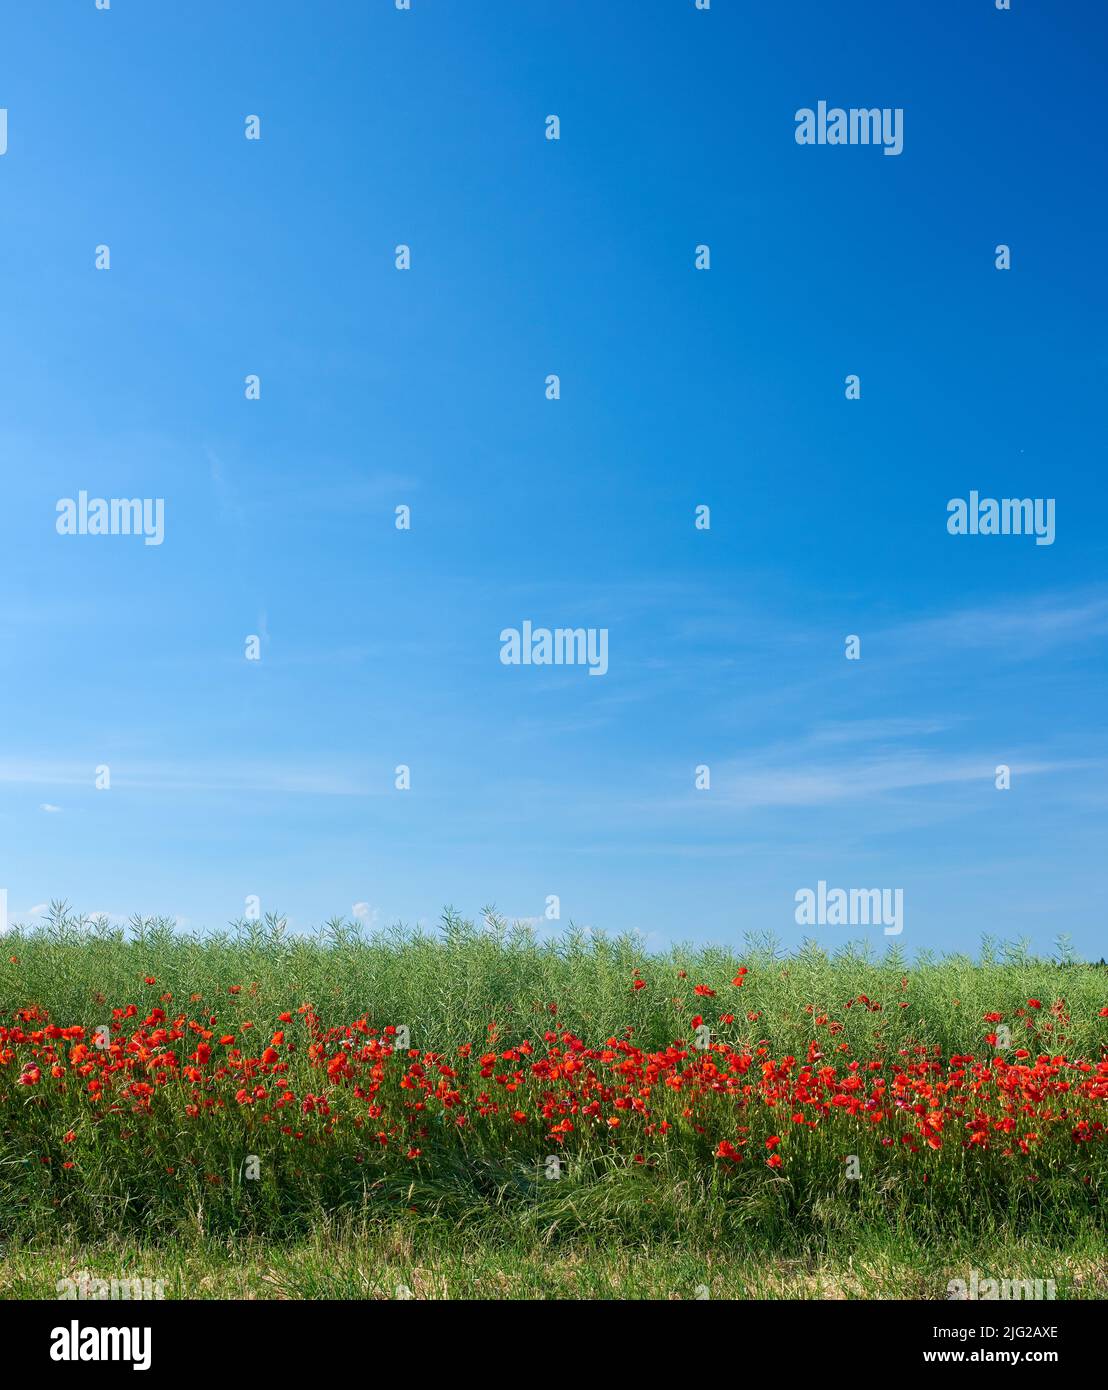 Feld von roten Mohnblumen blüht und blüht in wilden abgelegenen grünen Feld und Wiese. Blauer Himmel mit Kopierfläche mit Mohnblumen. Symbol der Erinnerung Stockfoto